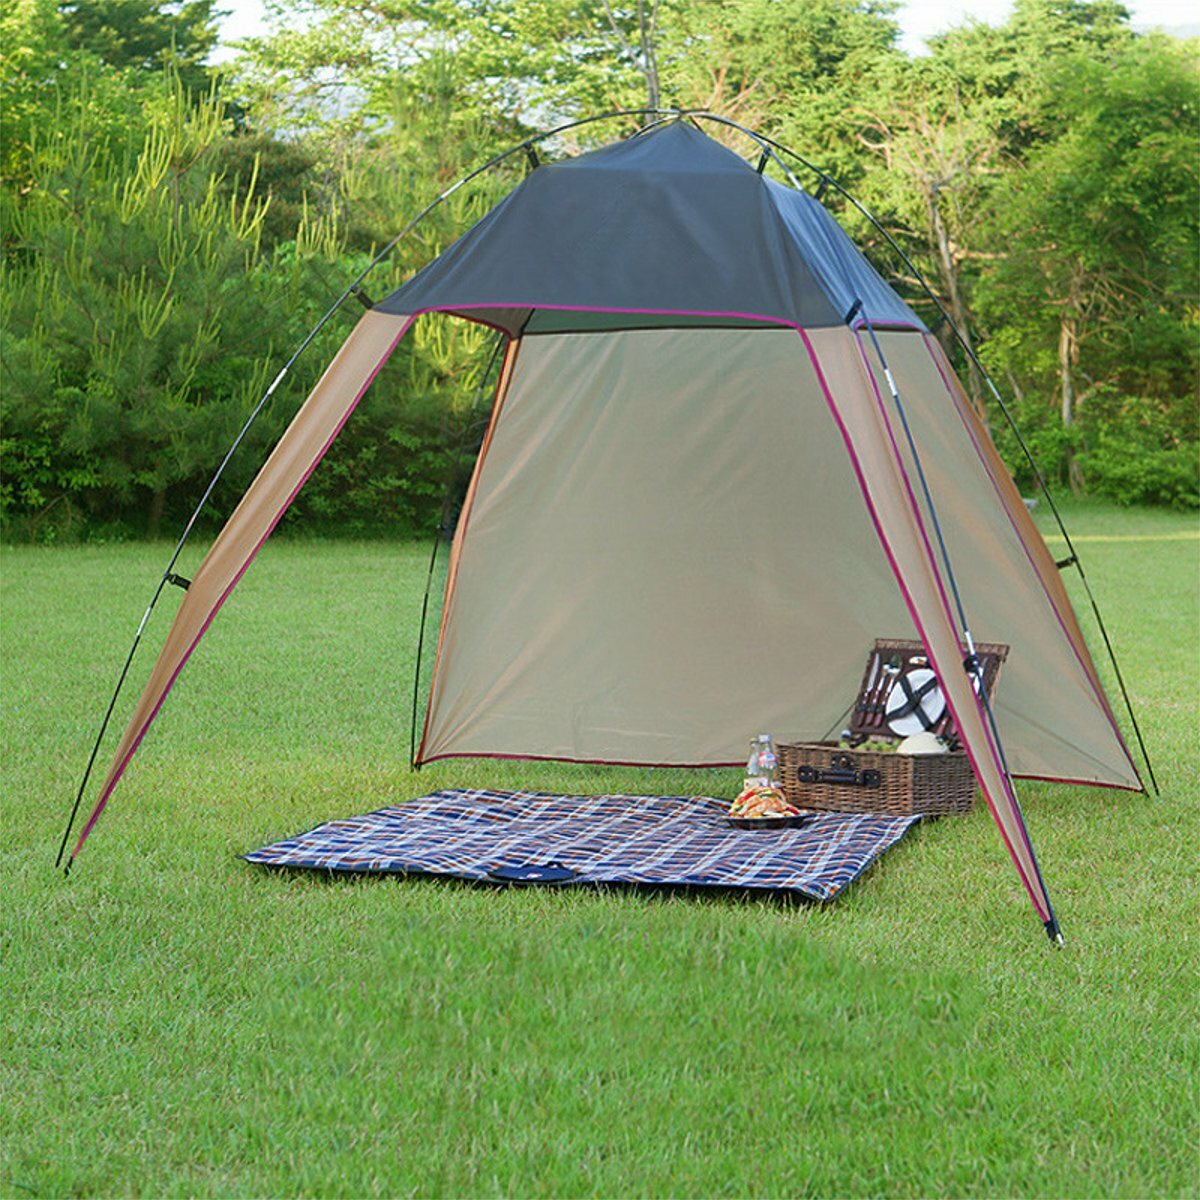 キャンプ、ピクニック、ビーチ用の軽量テント、風よけの大きなオーニング。